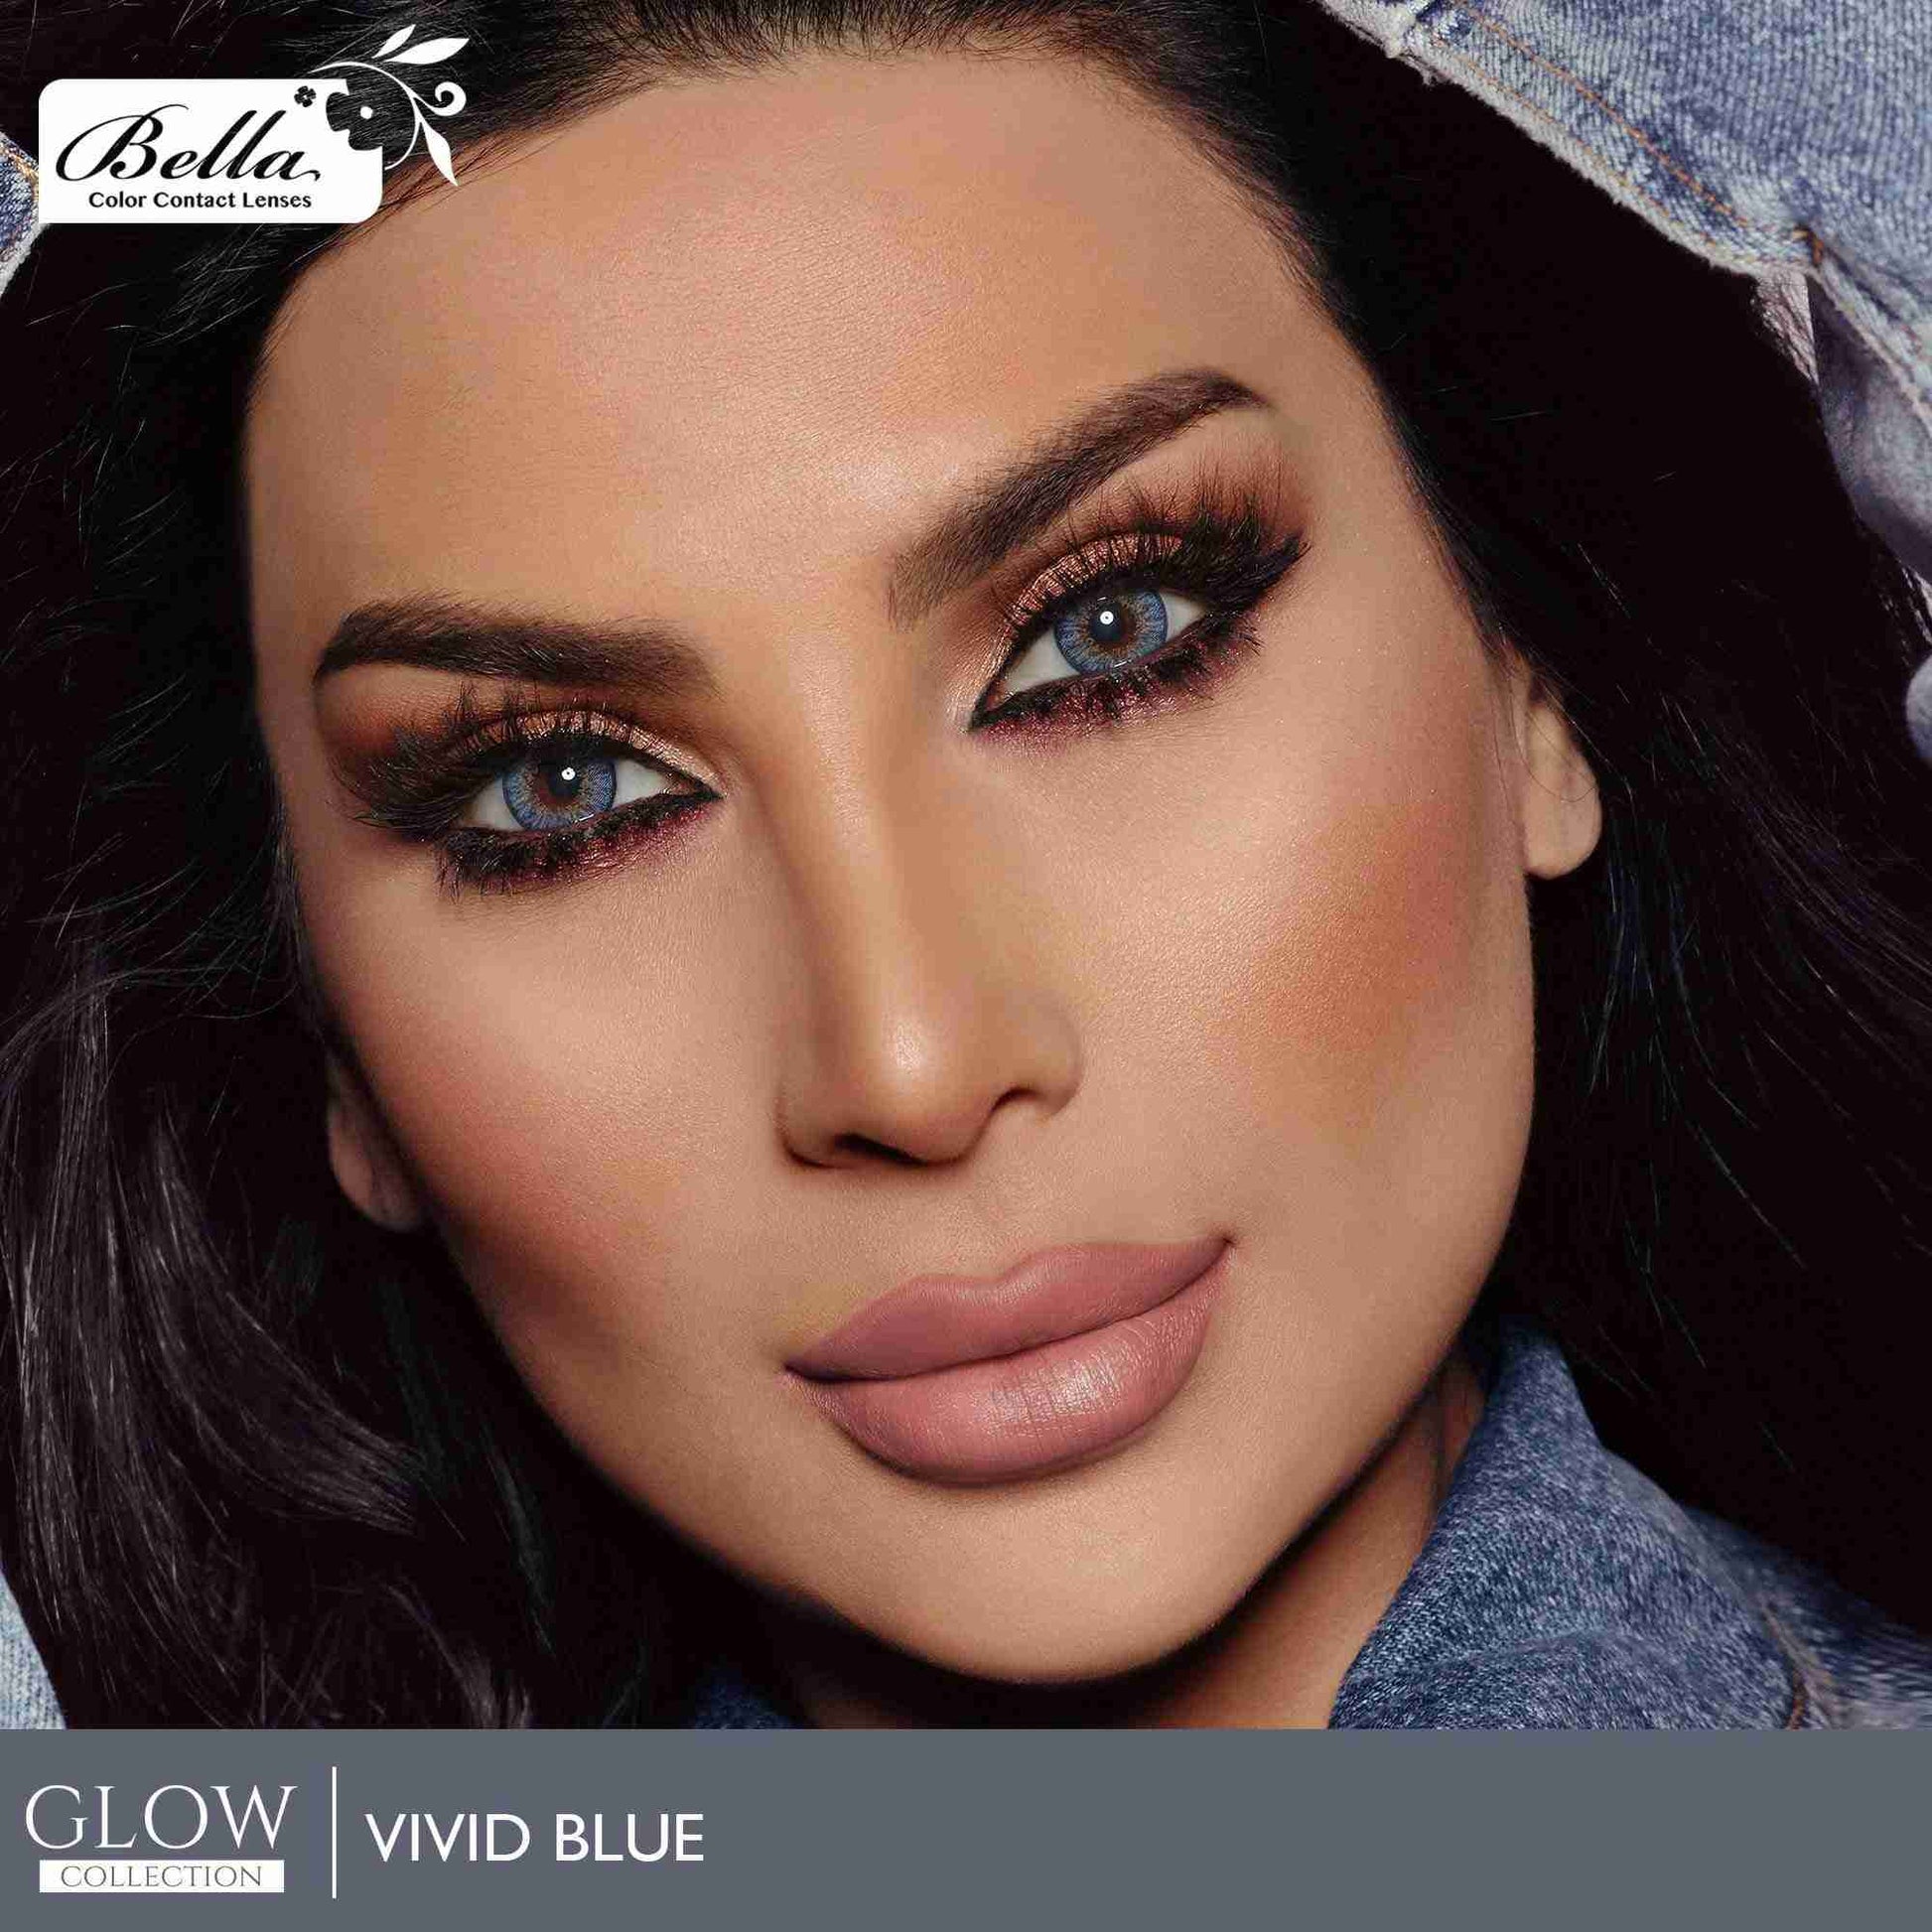 Glow Vivid Blue - Bella Contact Lenses Oman